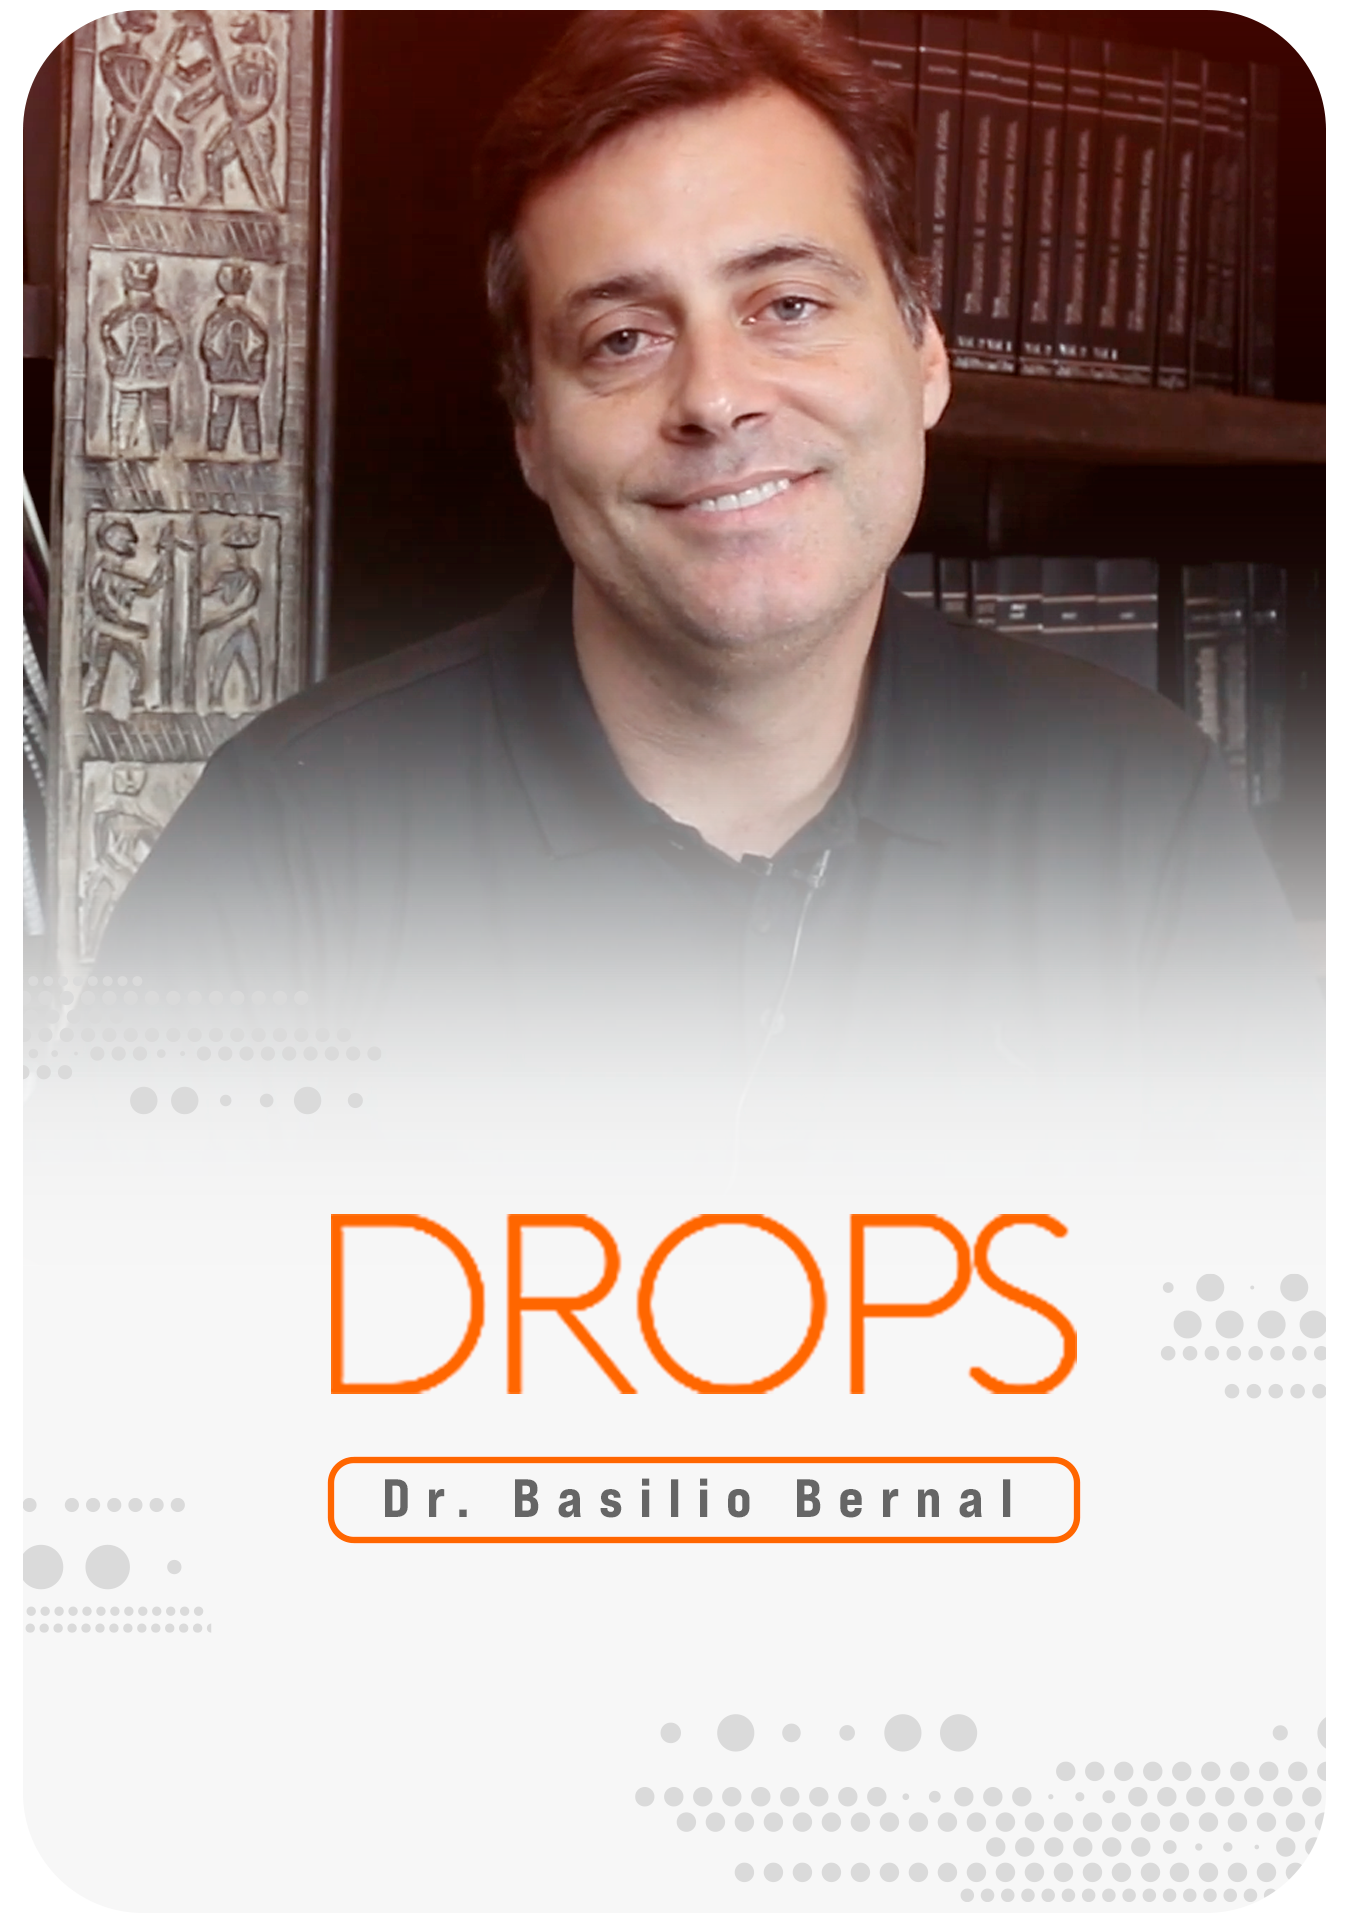 Dr. Basilio Bernal